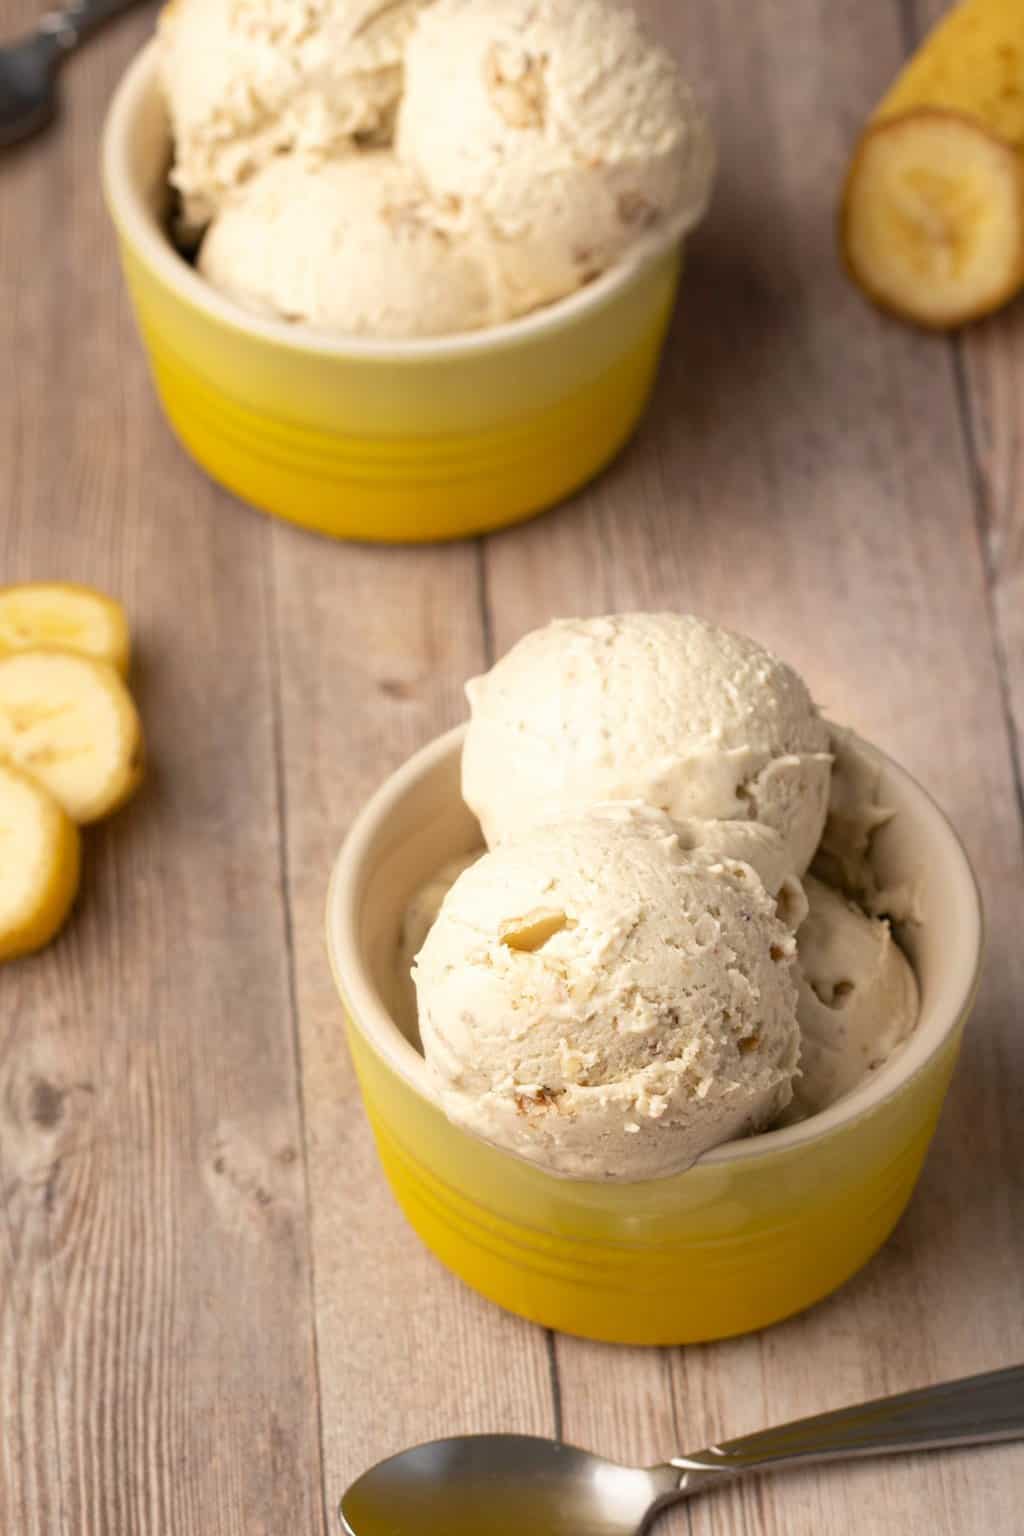 Vegan banana ice cream in yellow bowls. 